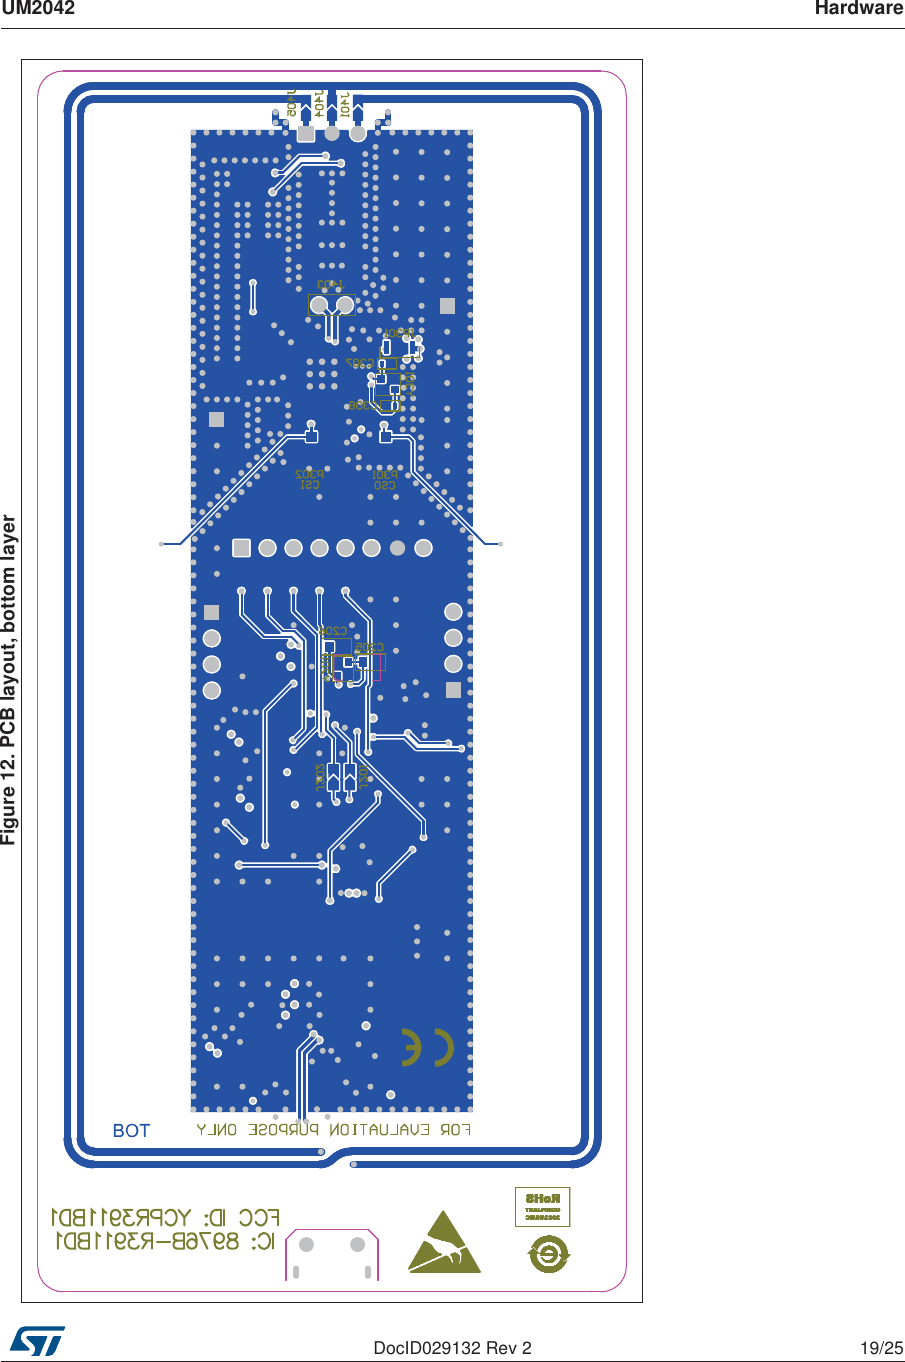 UM2042 HardwareDocID029132 Rev 2 19/25Figure 12. PCB layout, bottom layer